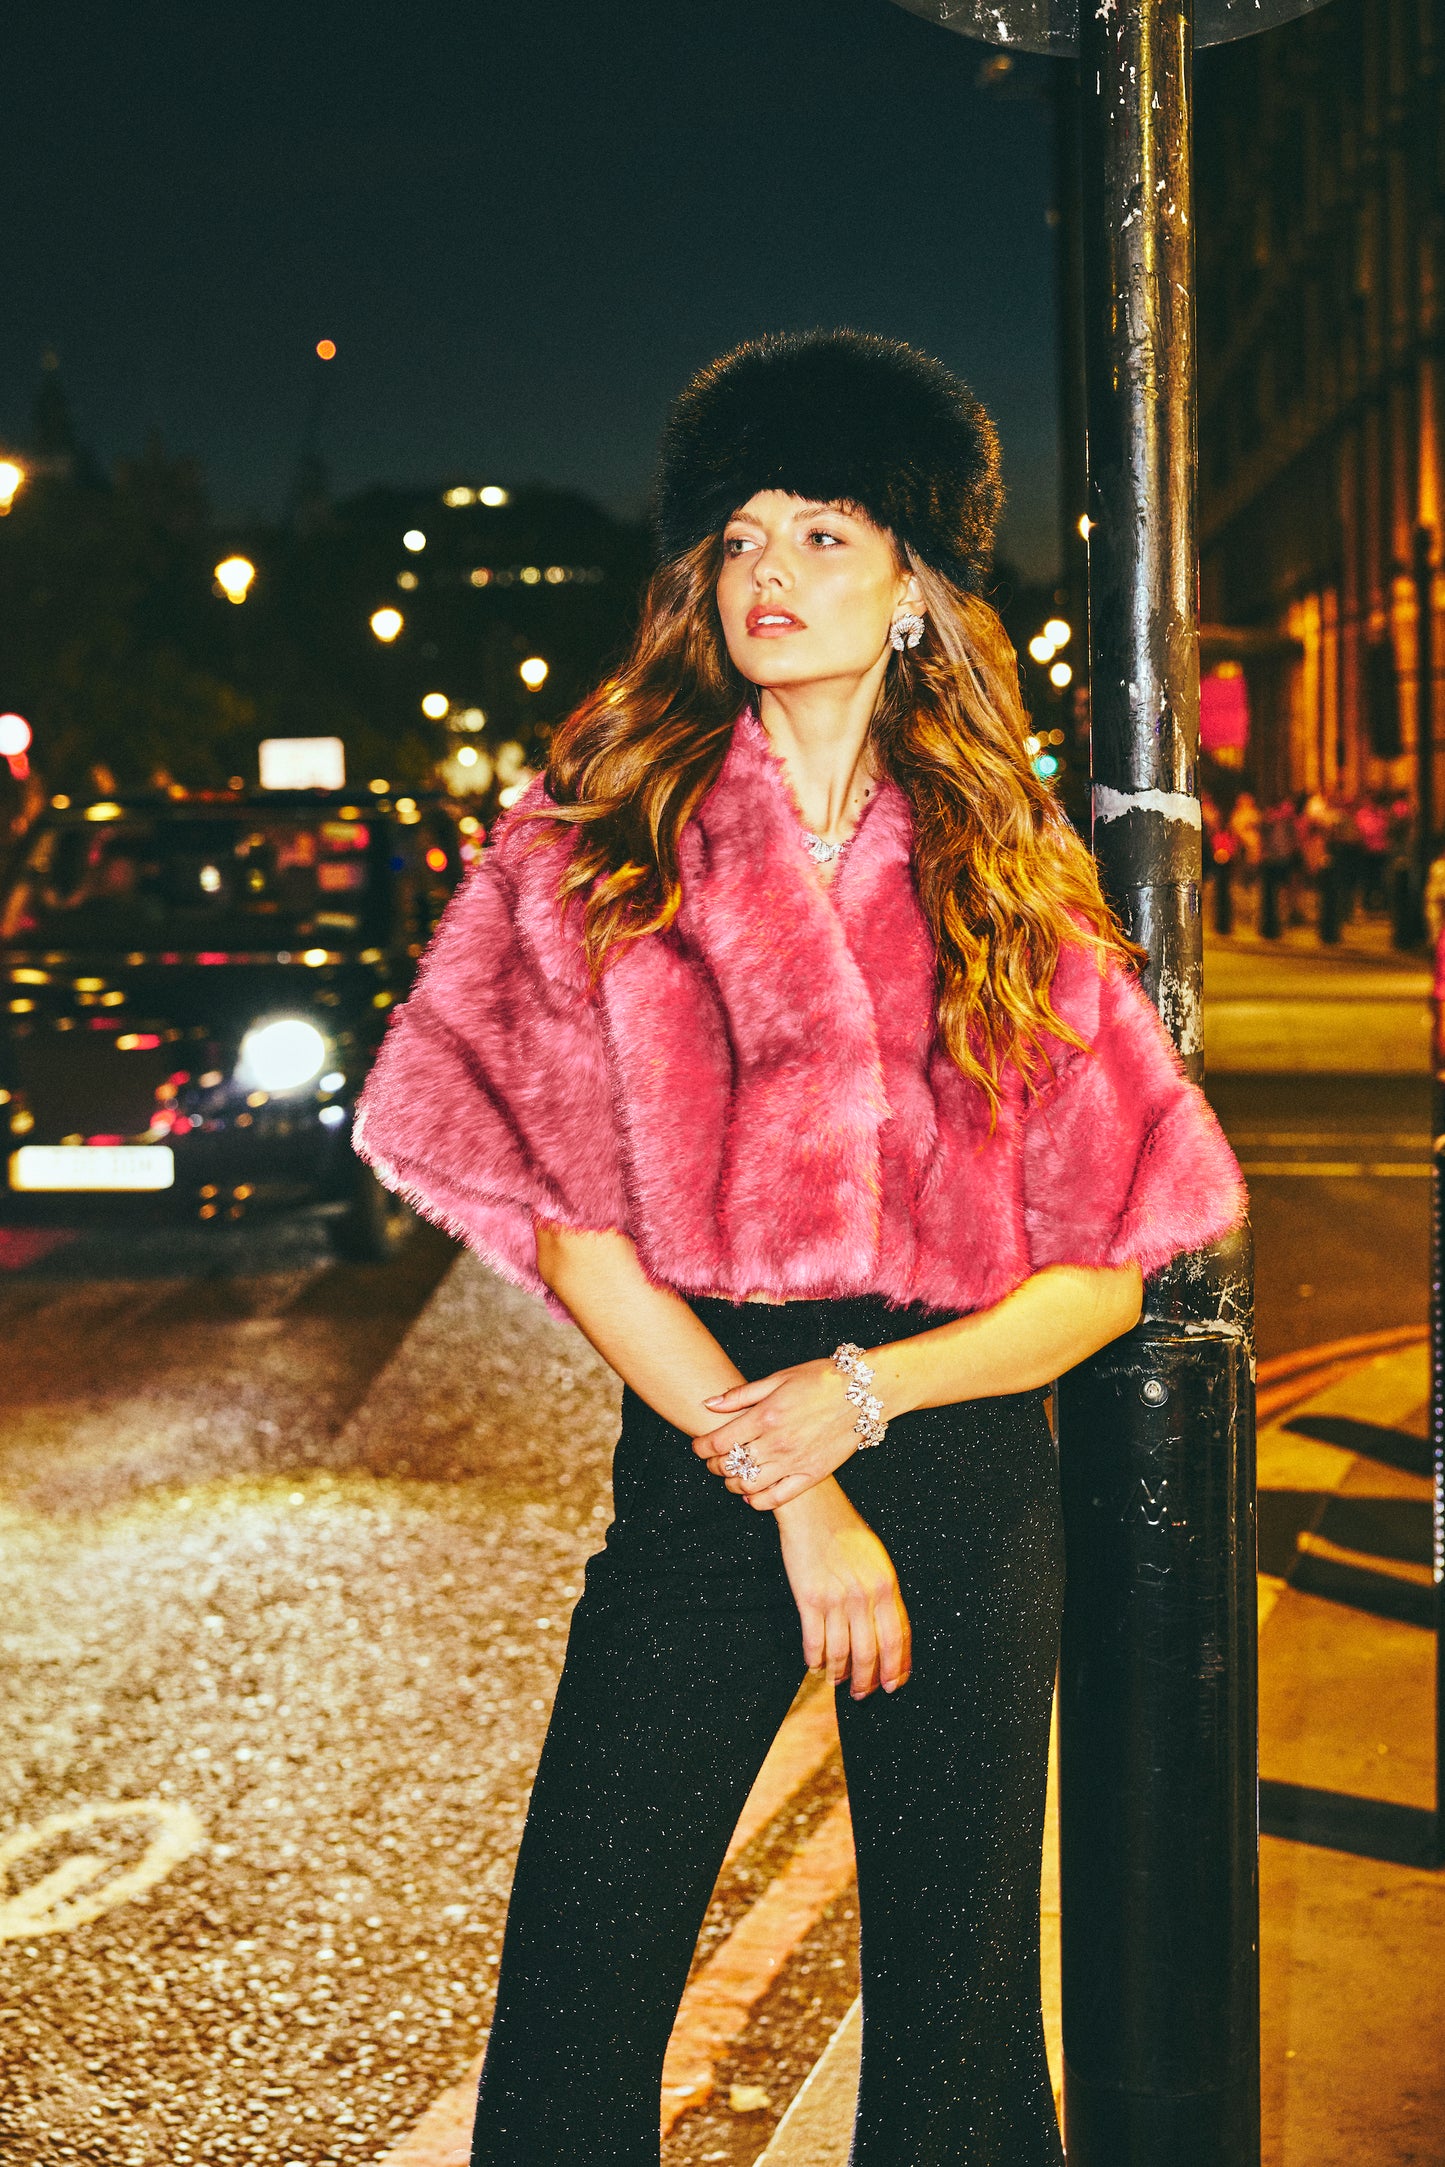 Sophia Fur Coat (Pink)